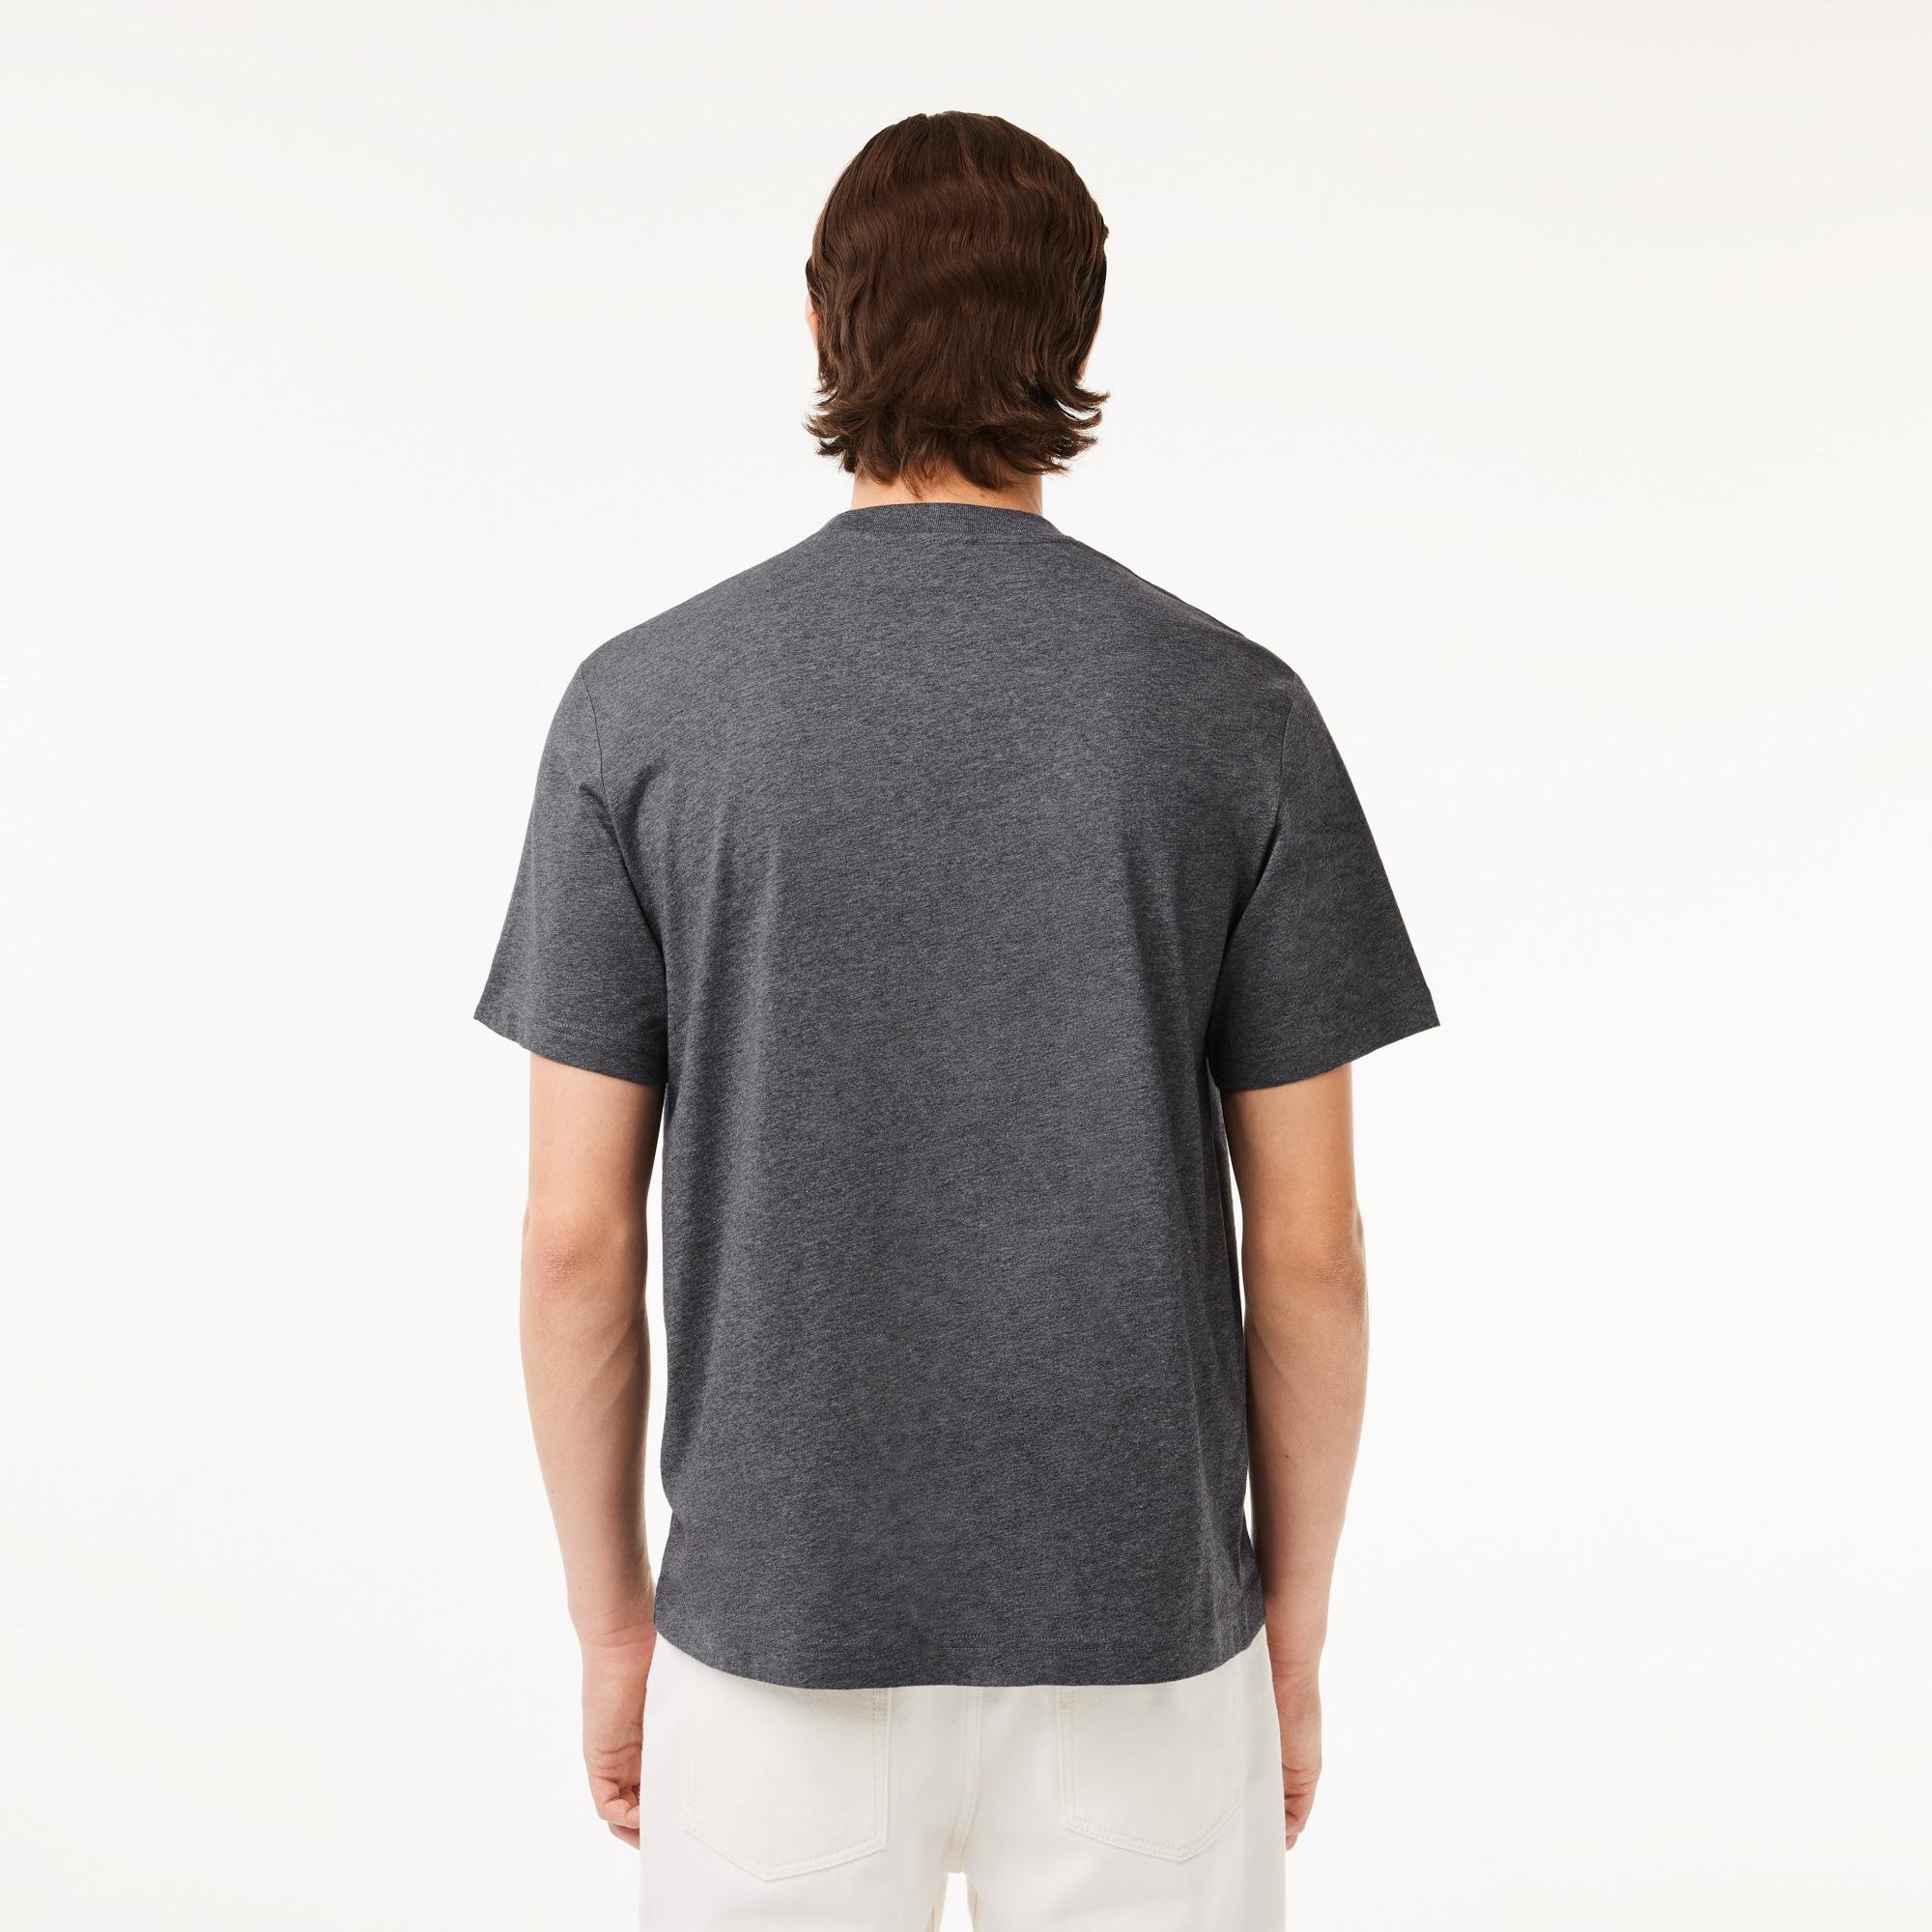 Lacoste klasszikus szabású pamut dzsörzé póló 